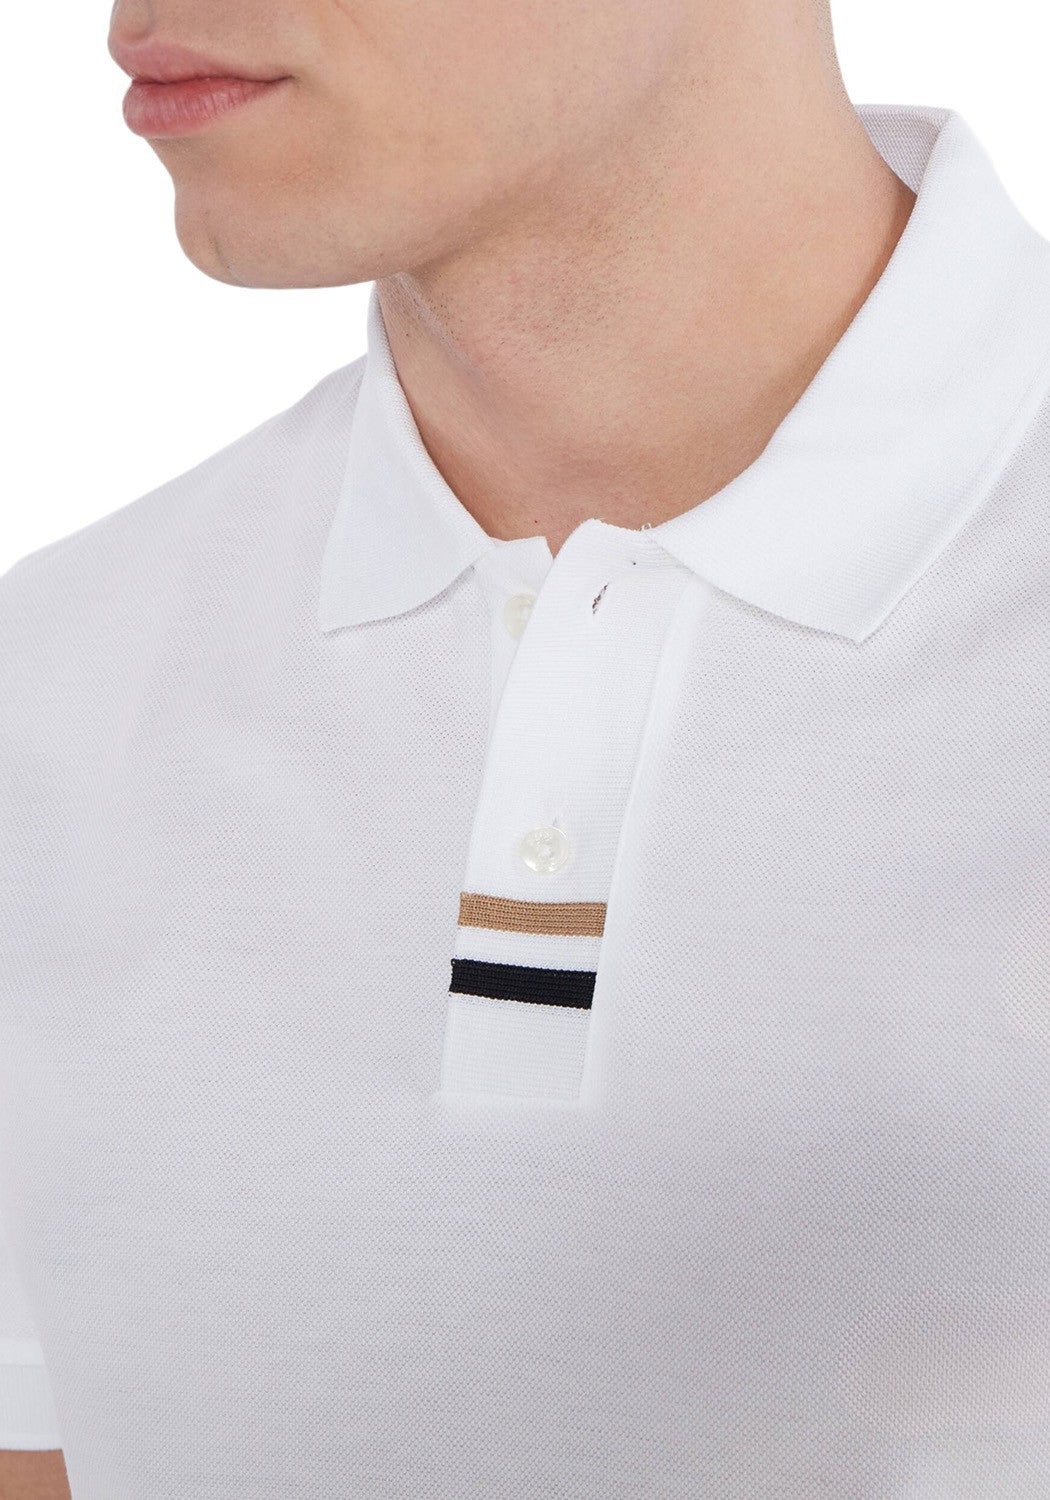 Hugo Boss Men's Parlay 424 Pique Cotton Short Sleeve Polo T-Shirt, White